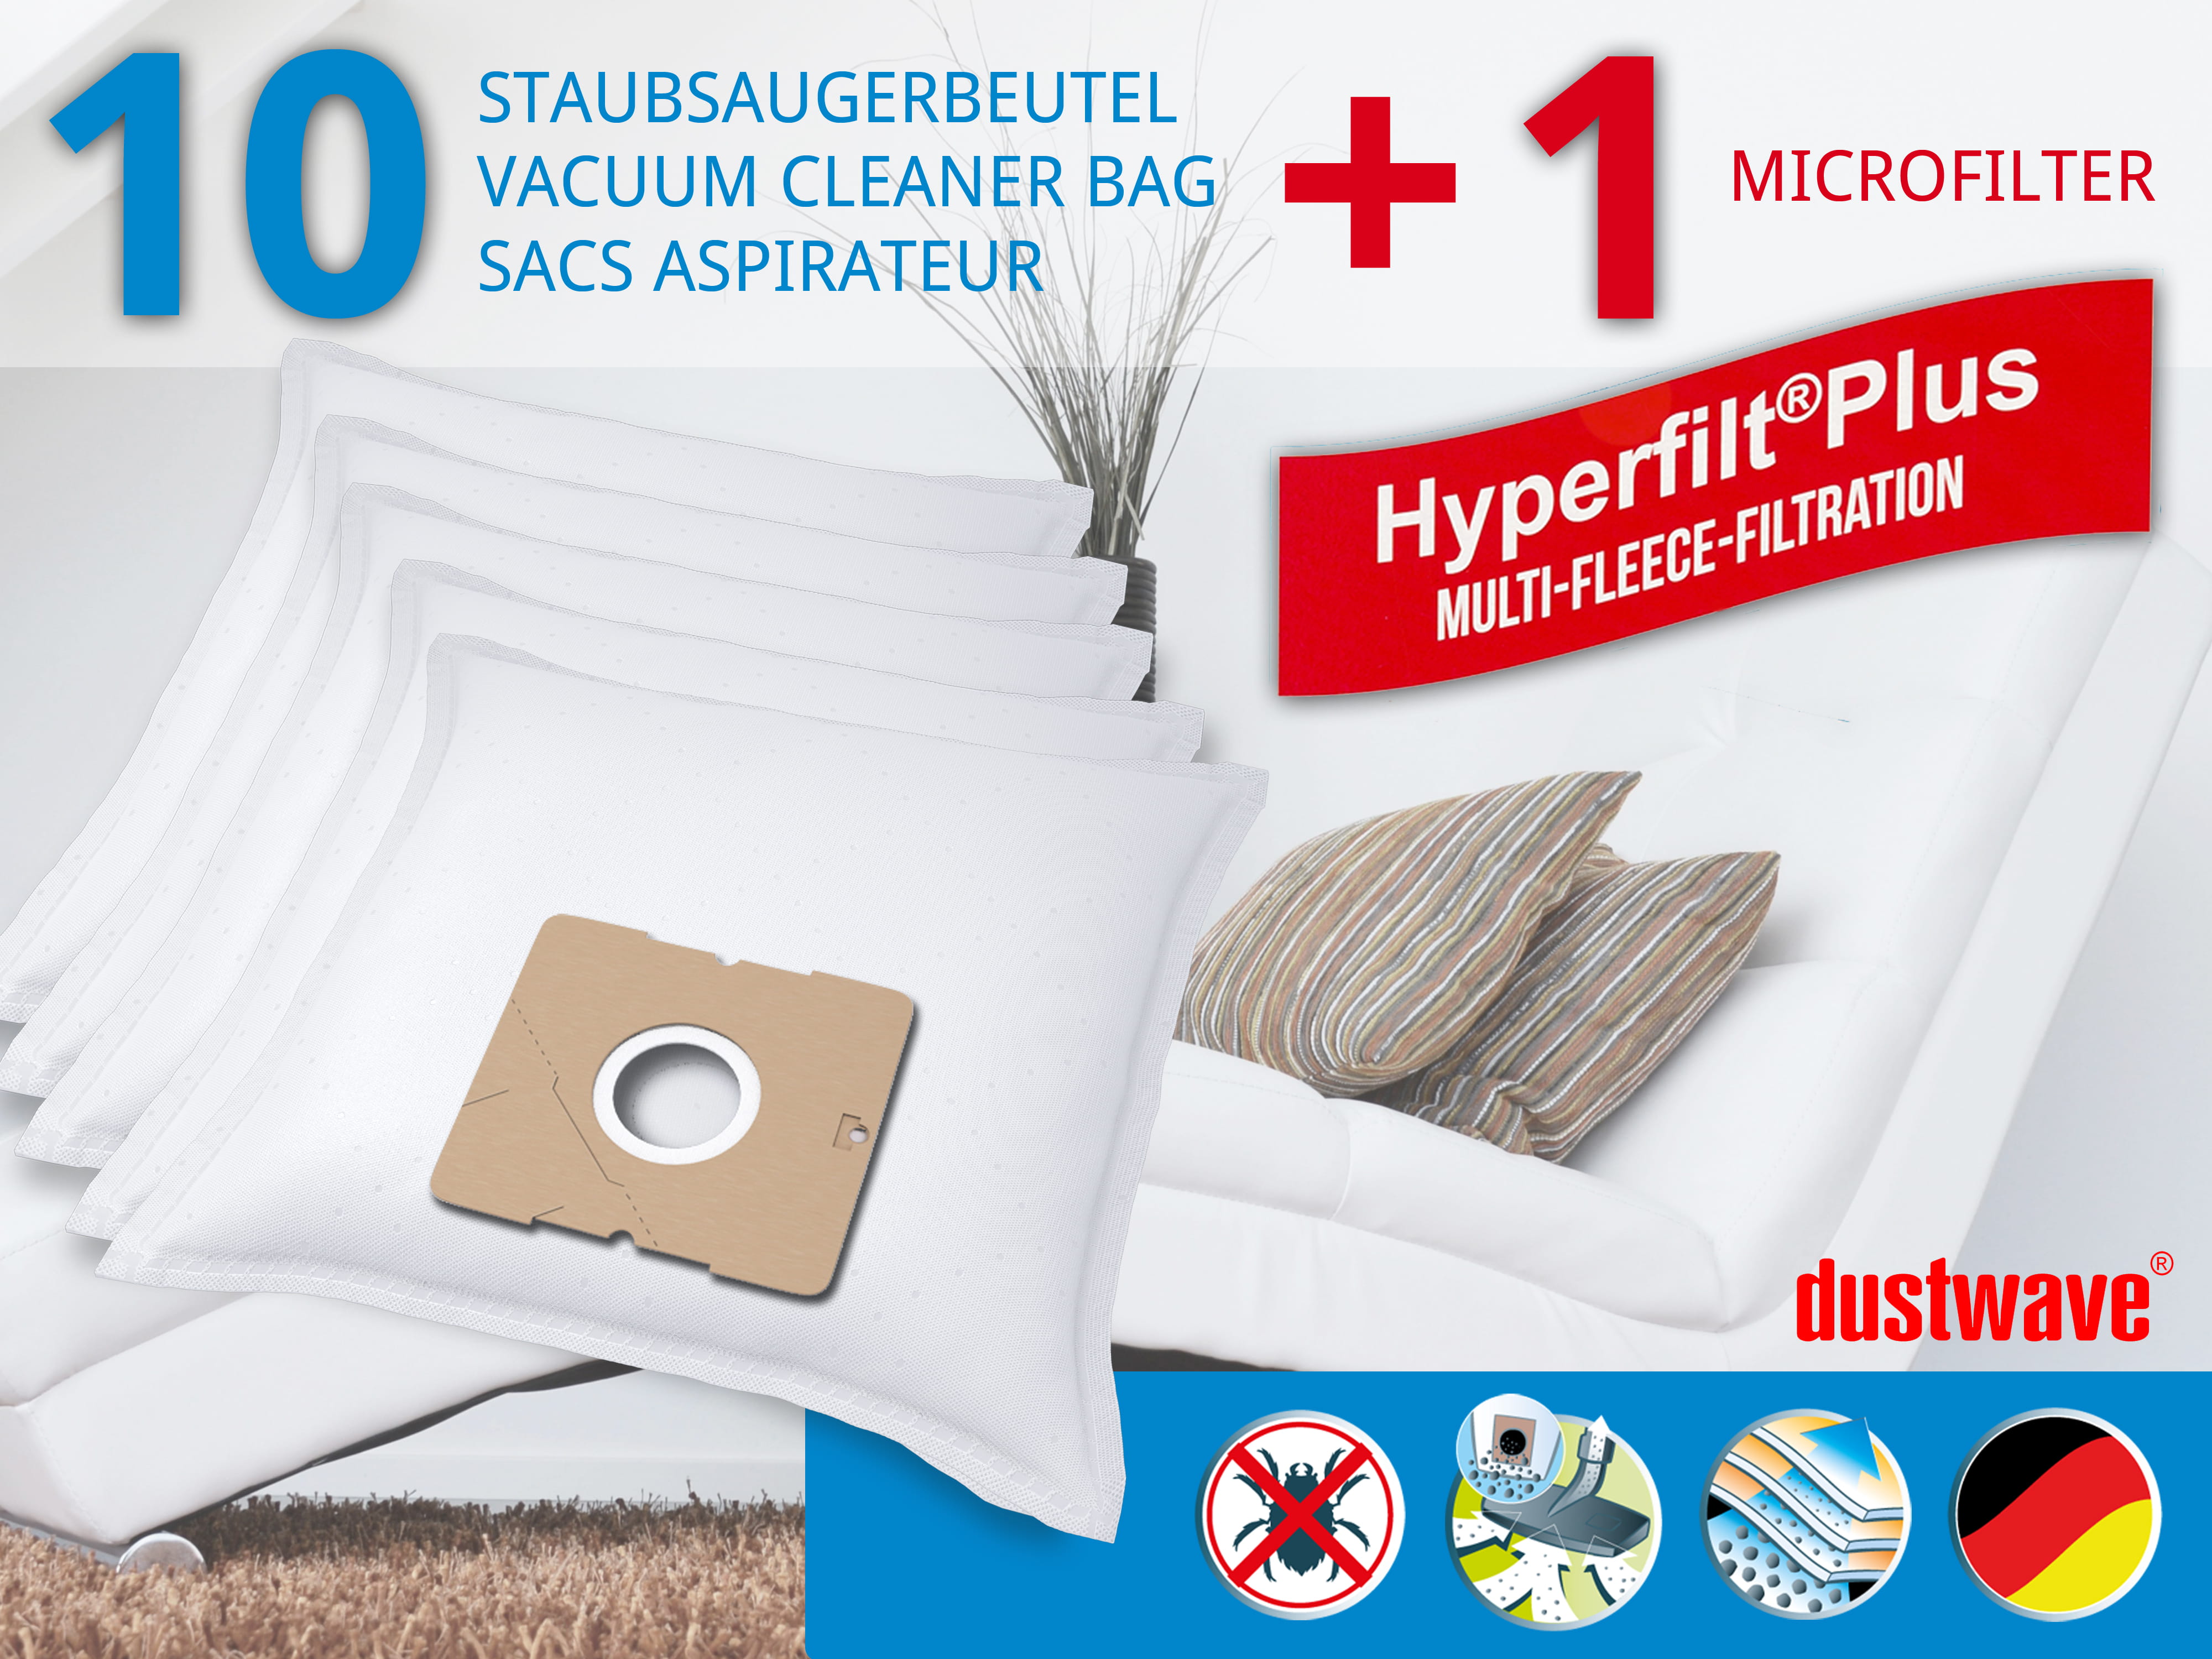 Dustwave® 10 Staubsaugerbeutel für Blue Sky BVC 50BA-16 - hocheffizient, mehrlagiges Mikrovlies mit Hygieneverschluss - Made in Germany